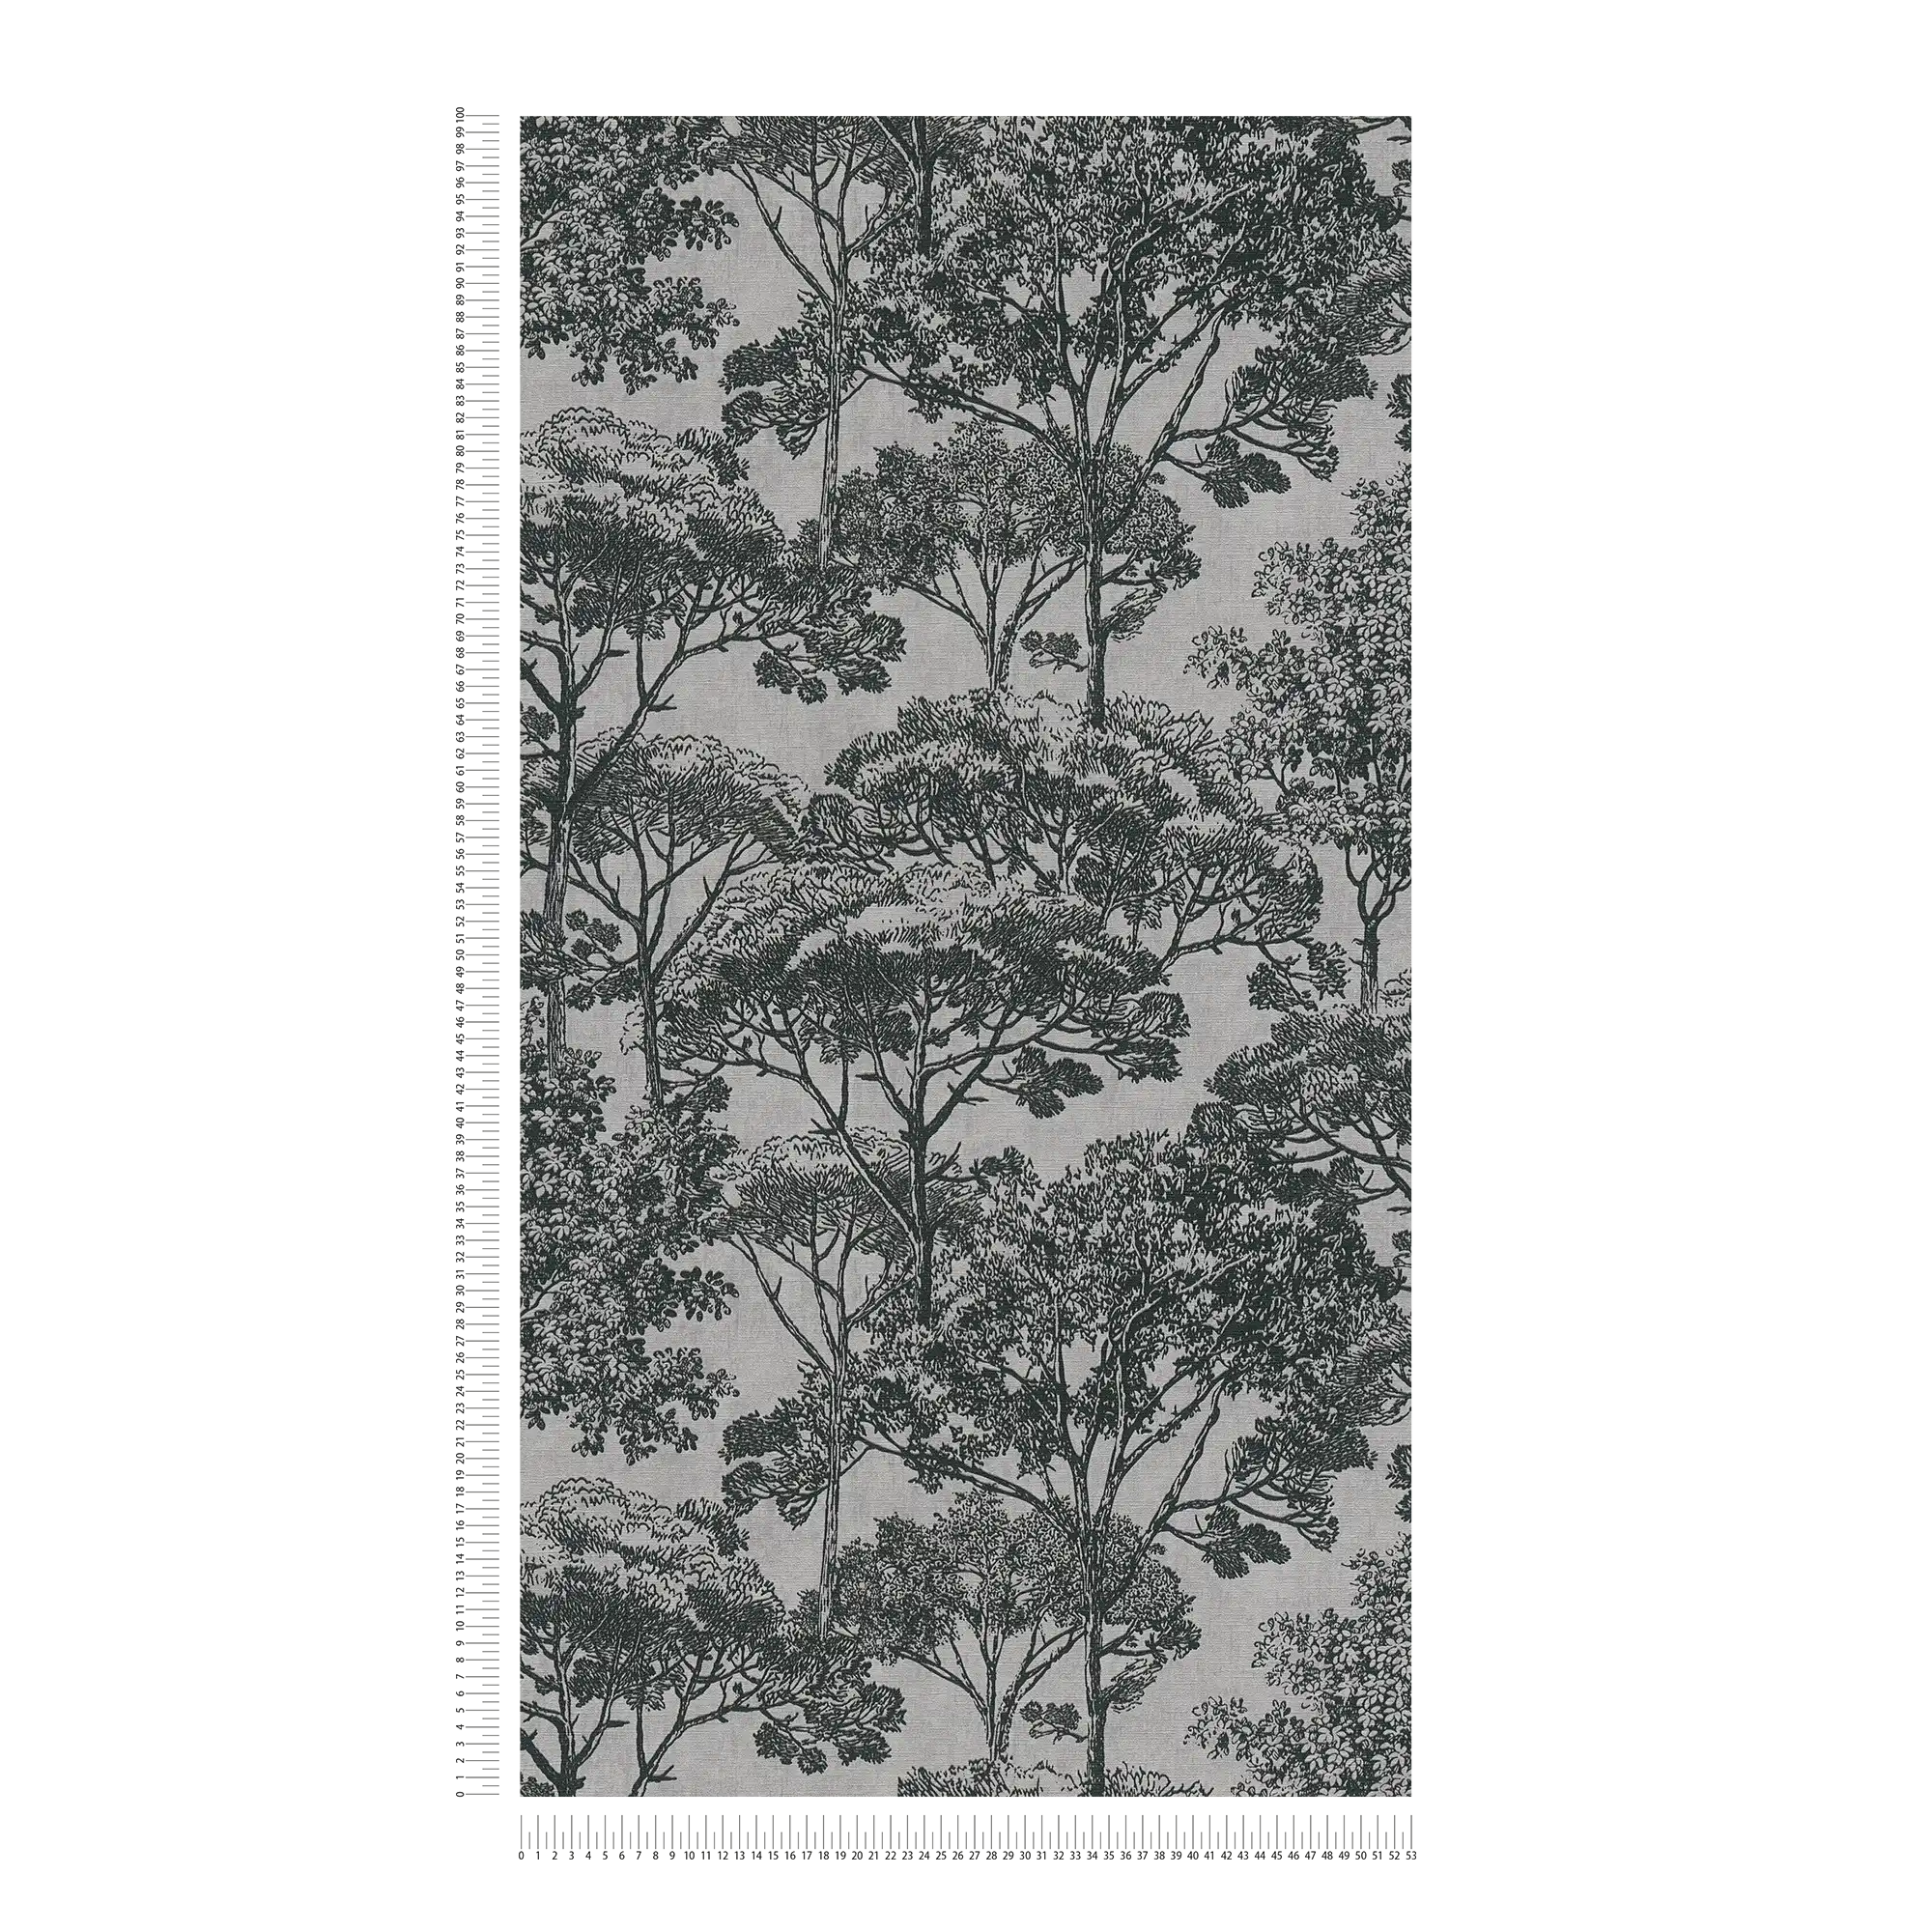             Tree wallpaper linen look in colonial style - beige, black
        